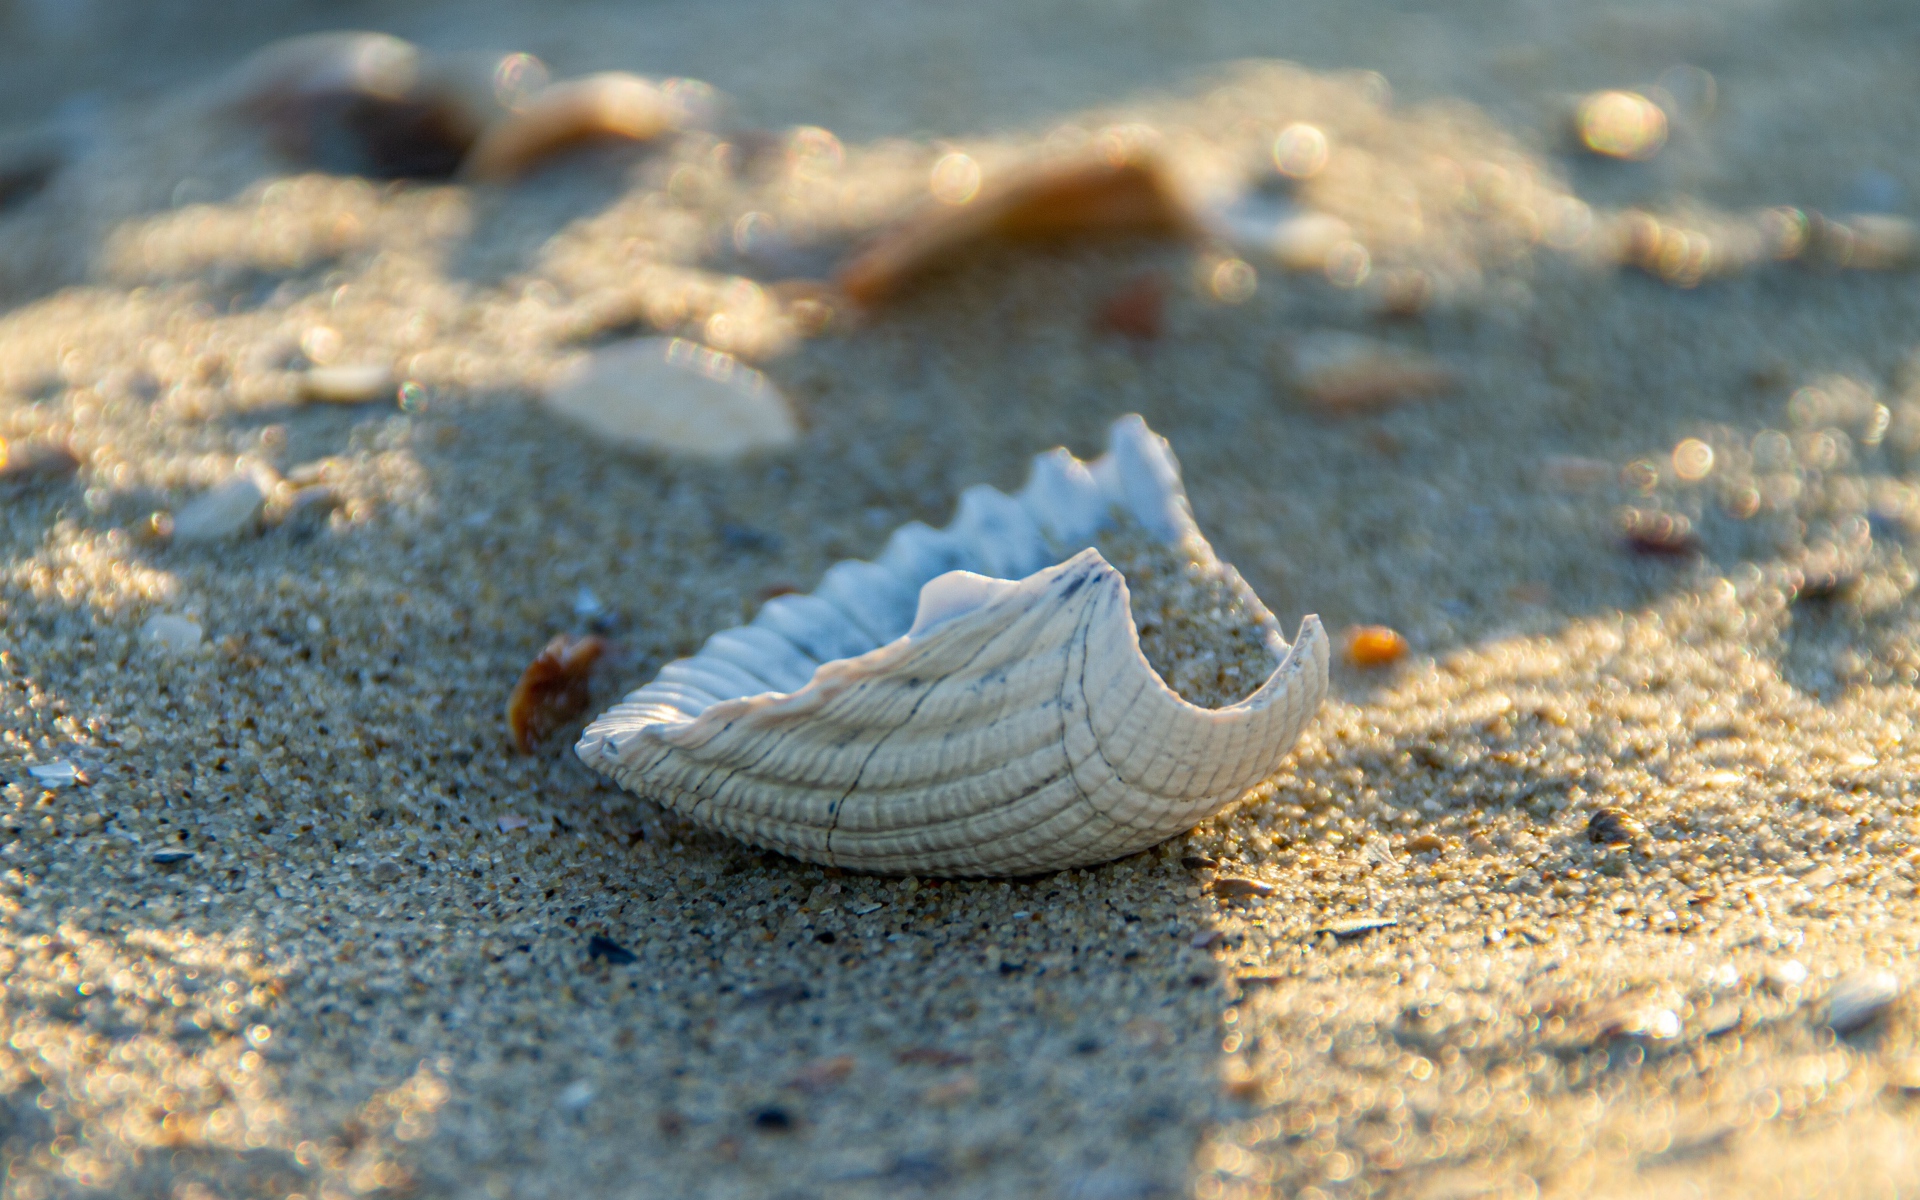 White seashell on hot sand in summer